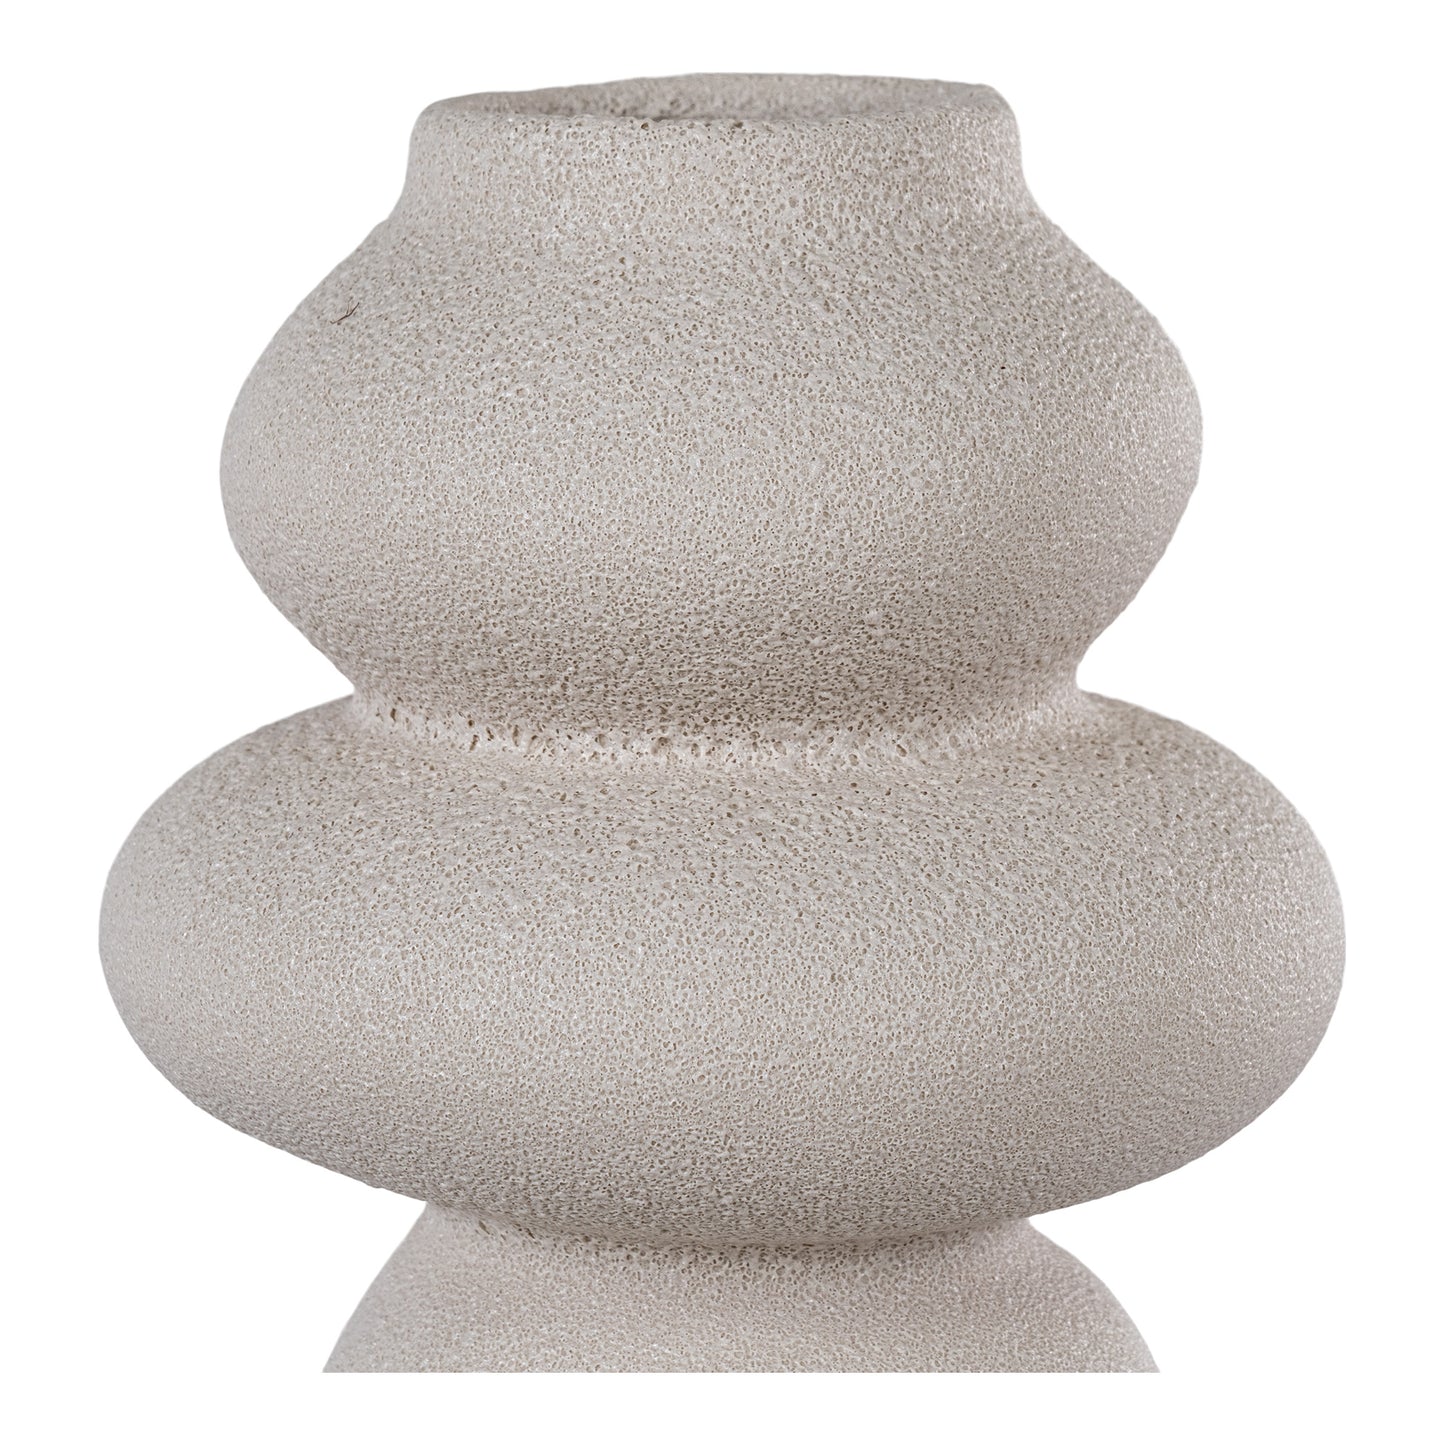 Vase  - Vase i keramik, beige, rund, Ø14,5x26,5 cm